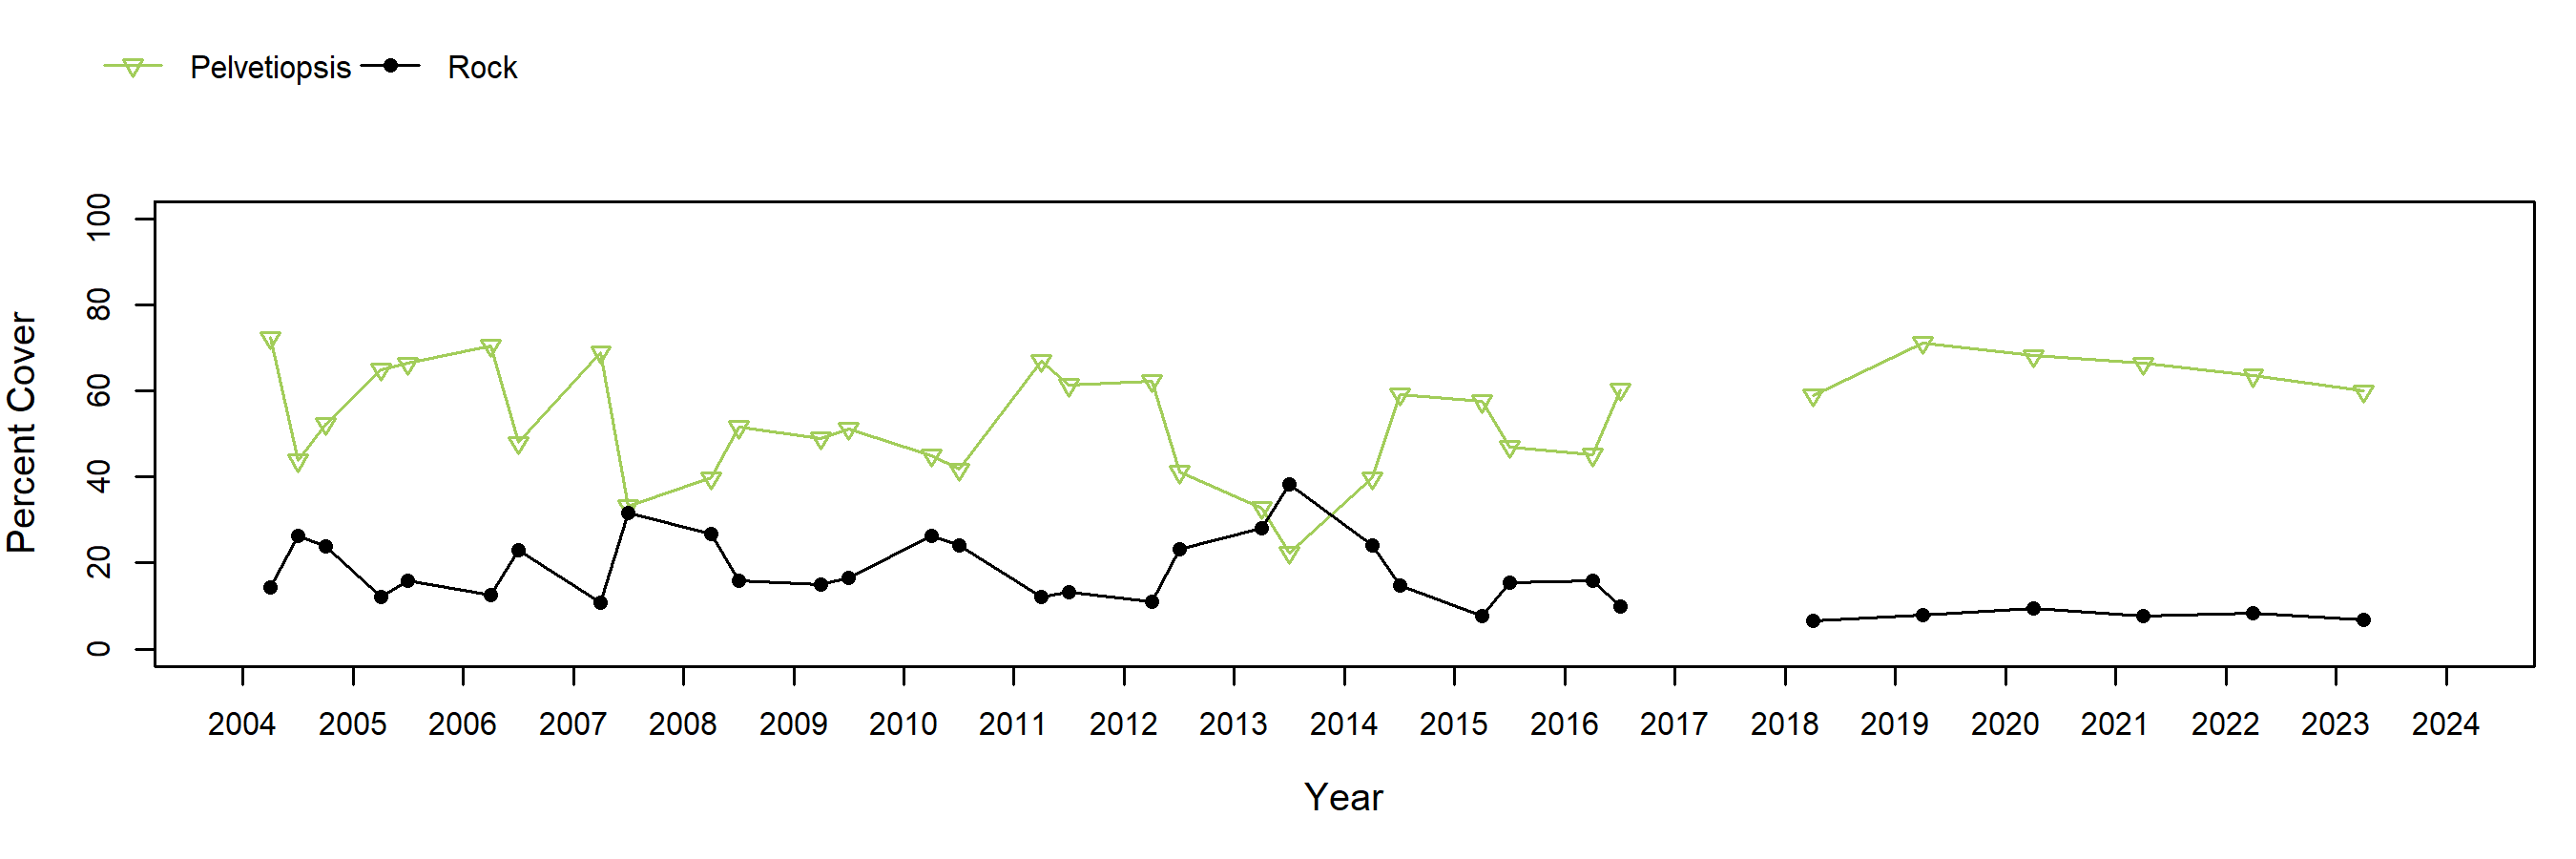 Enderts Pelvetiopsis trend plot